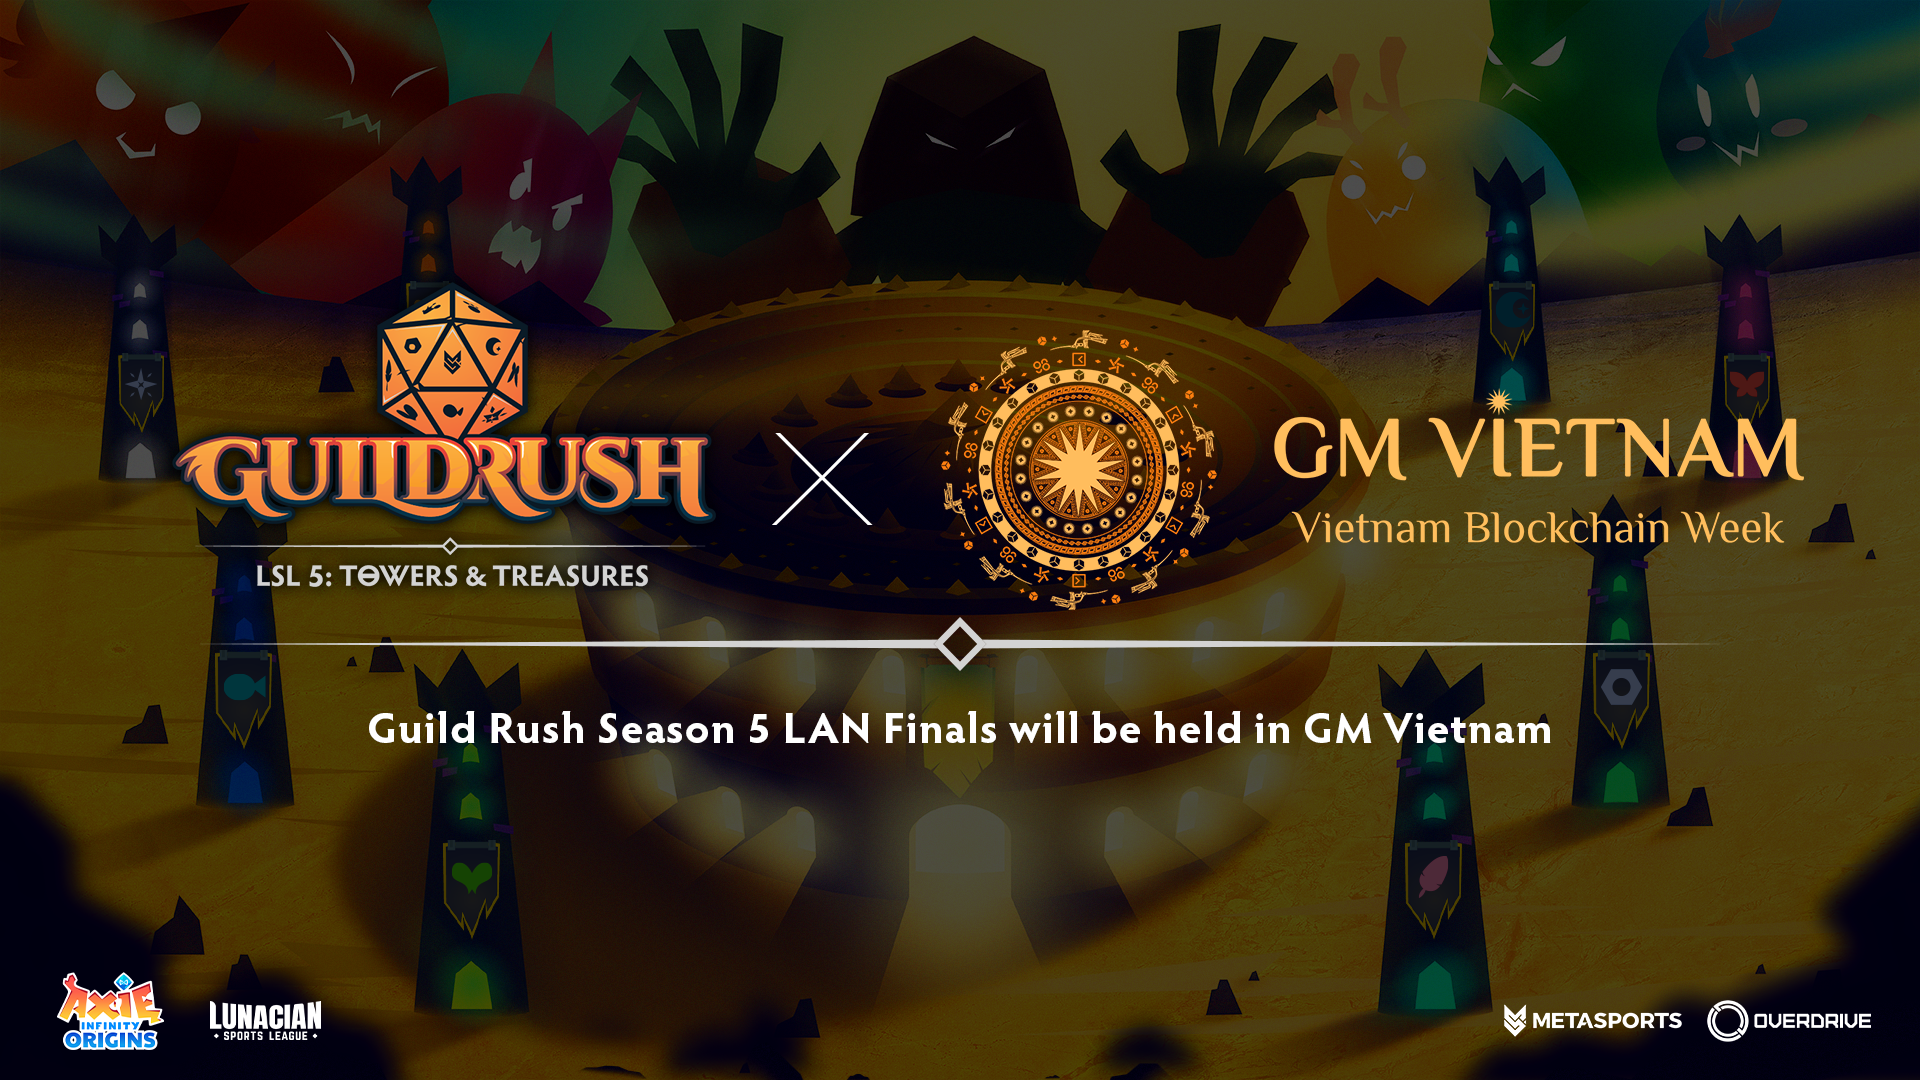 GM Vietnam trở thành địa điểm diễn ra Chung kết LSL: Guild Rush